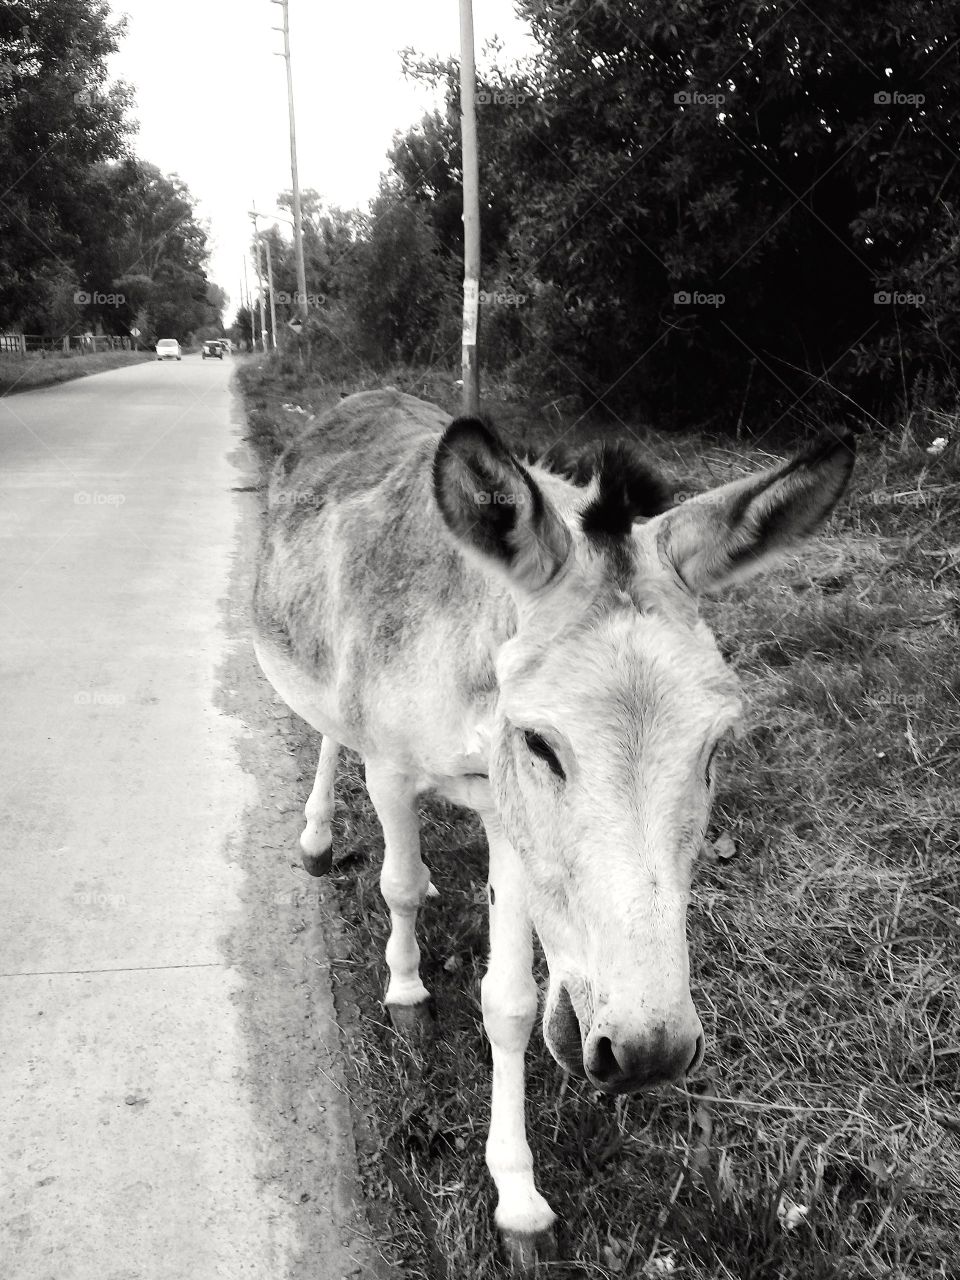 Imagen de un viejo burro caminando tranquilo a la vera de una calle rural, mientras pasta en el camino a casa.